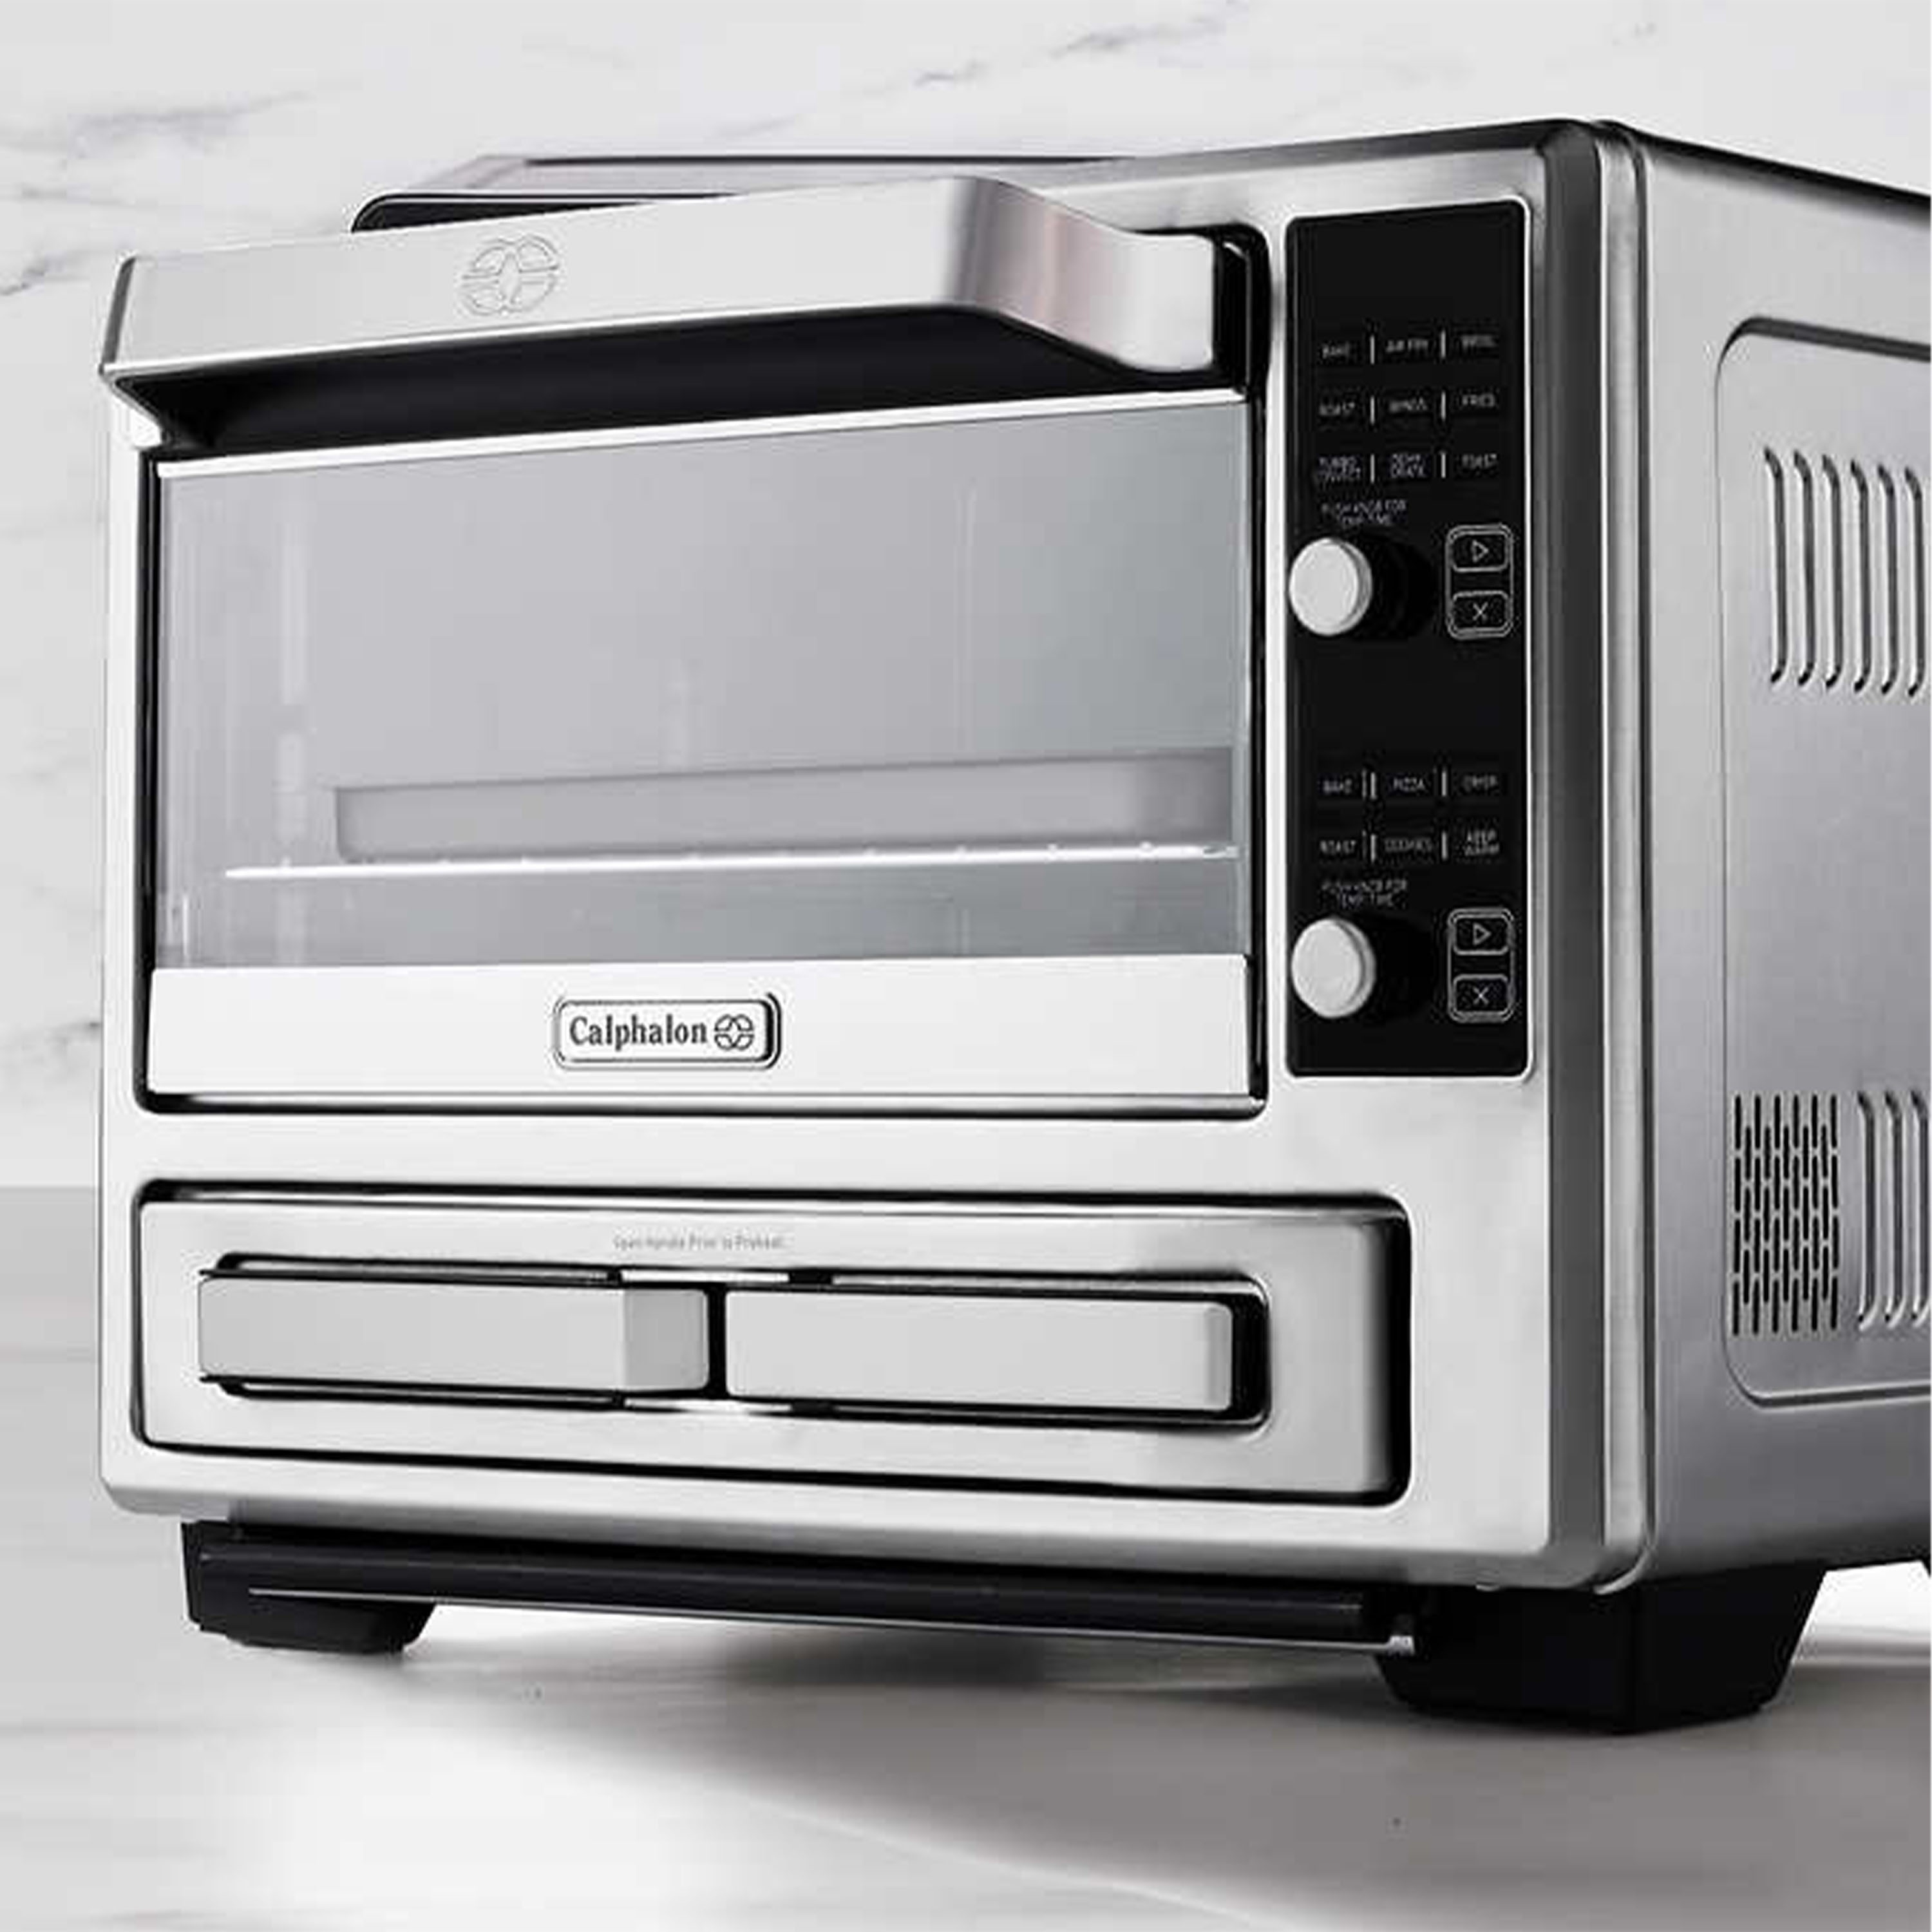 Calphalon Performance Air Fry Convection Oven, Countertop Toaster